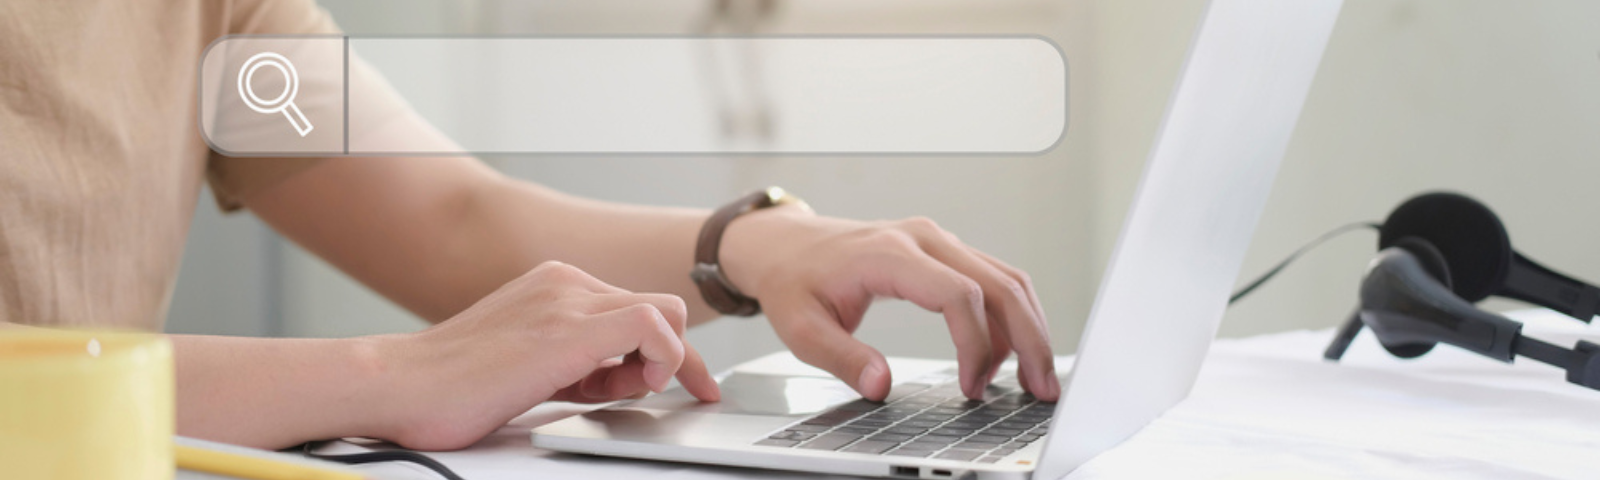 Foco selectivo mostrando las manos de una persona en el teclado de un computador